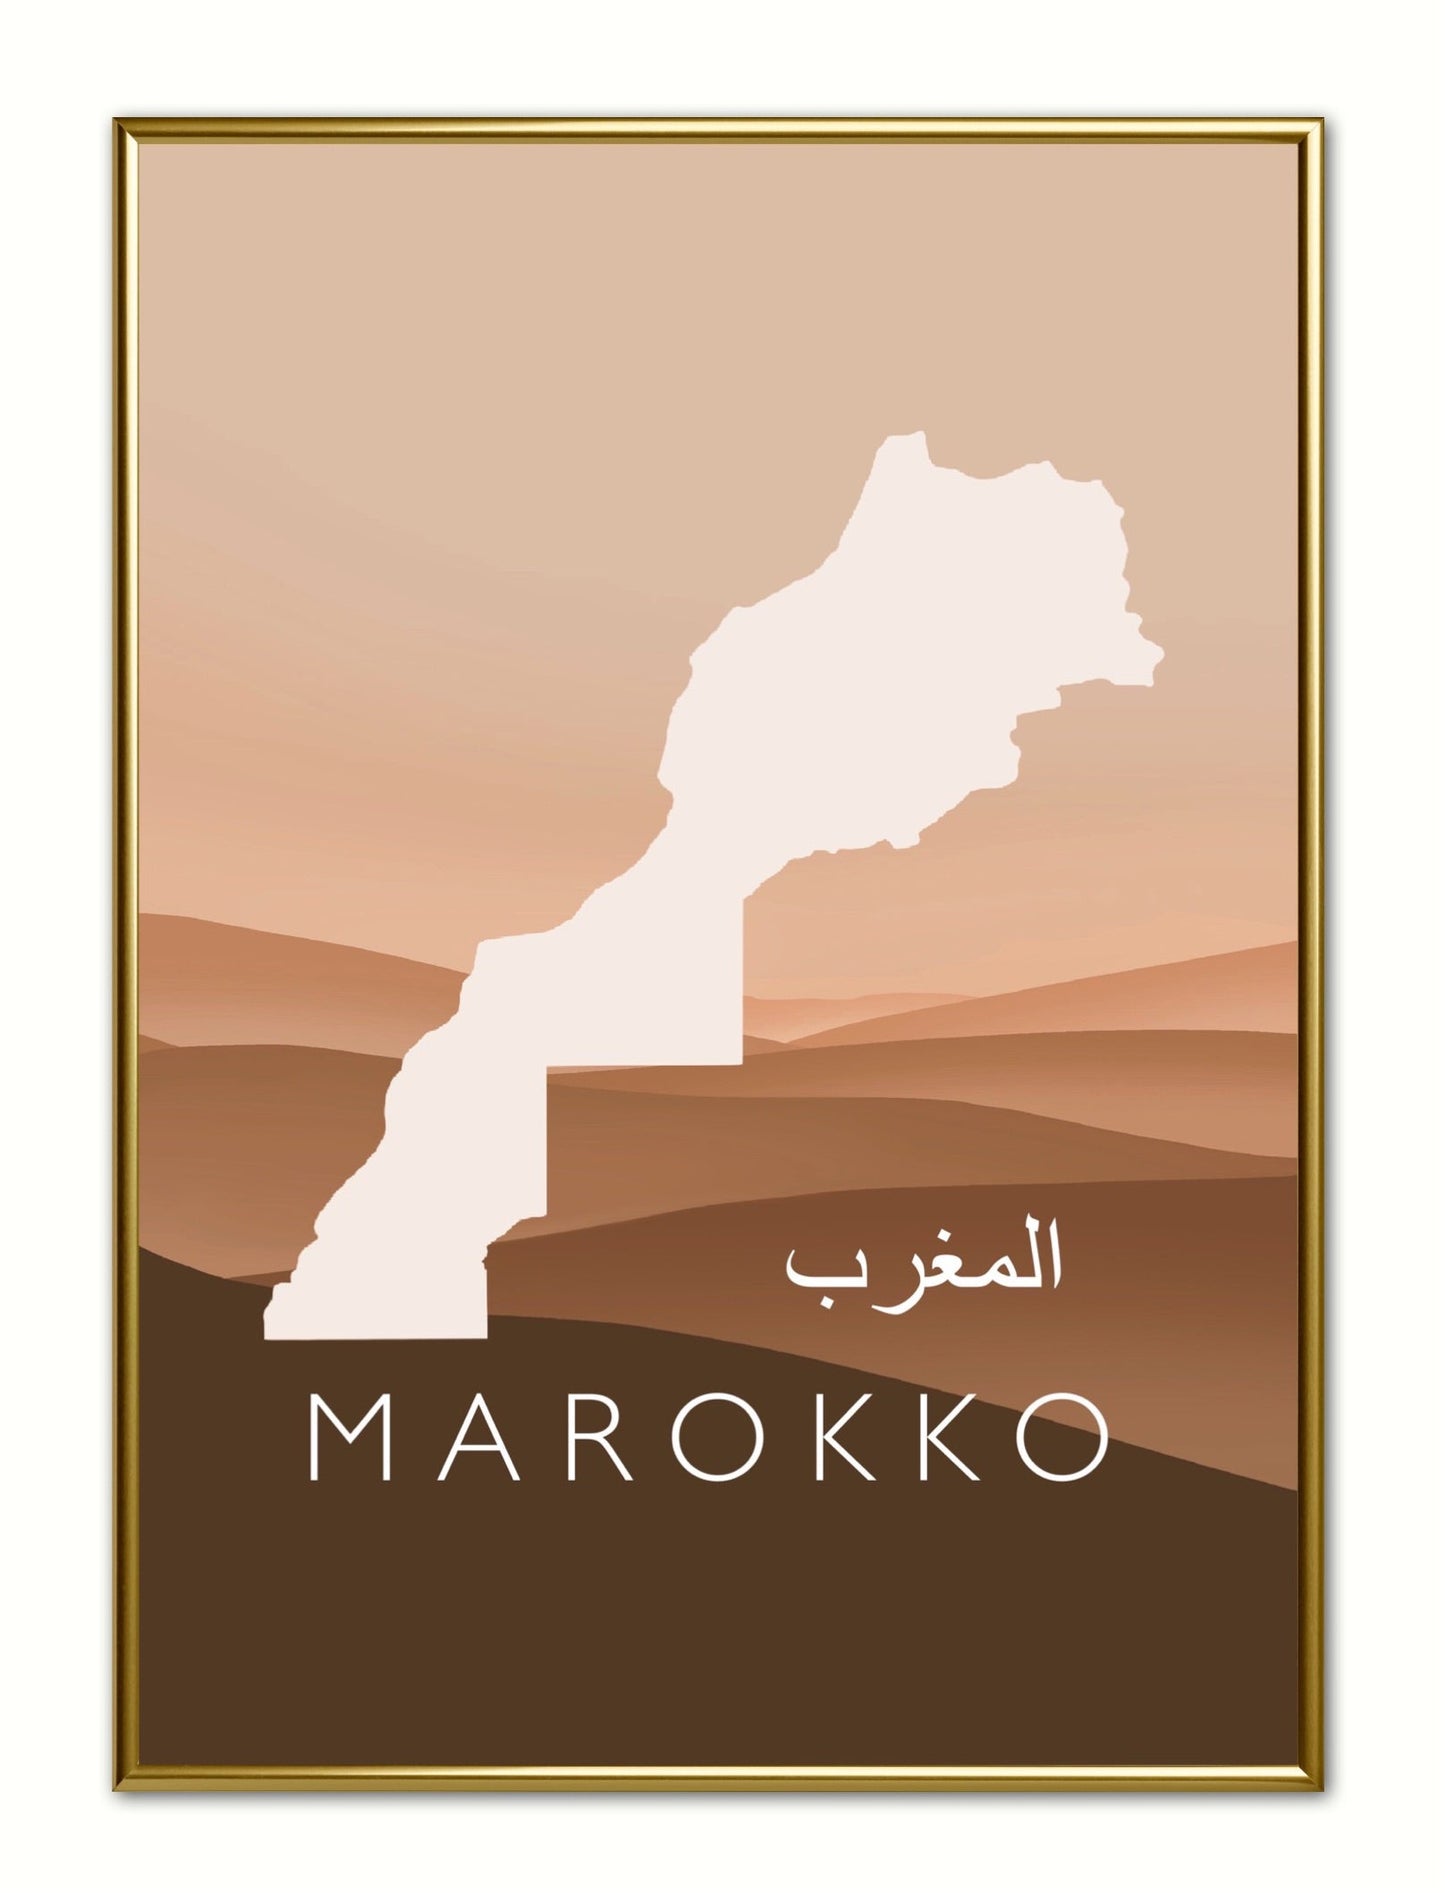 Marokko Poster